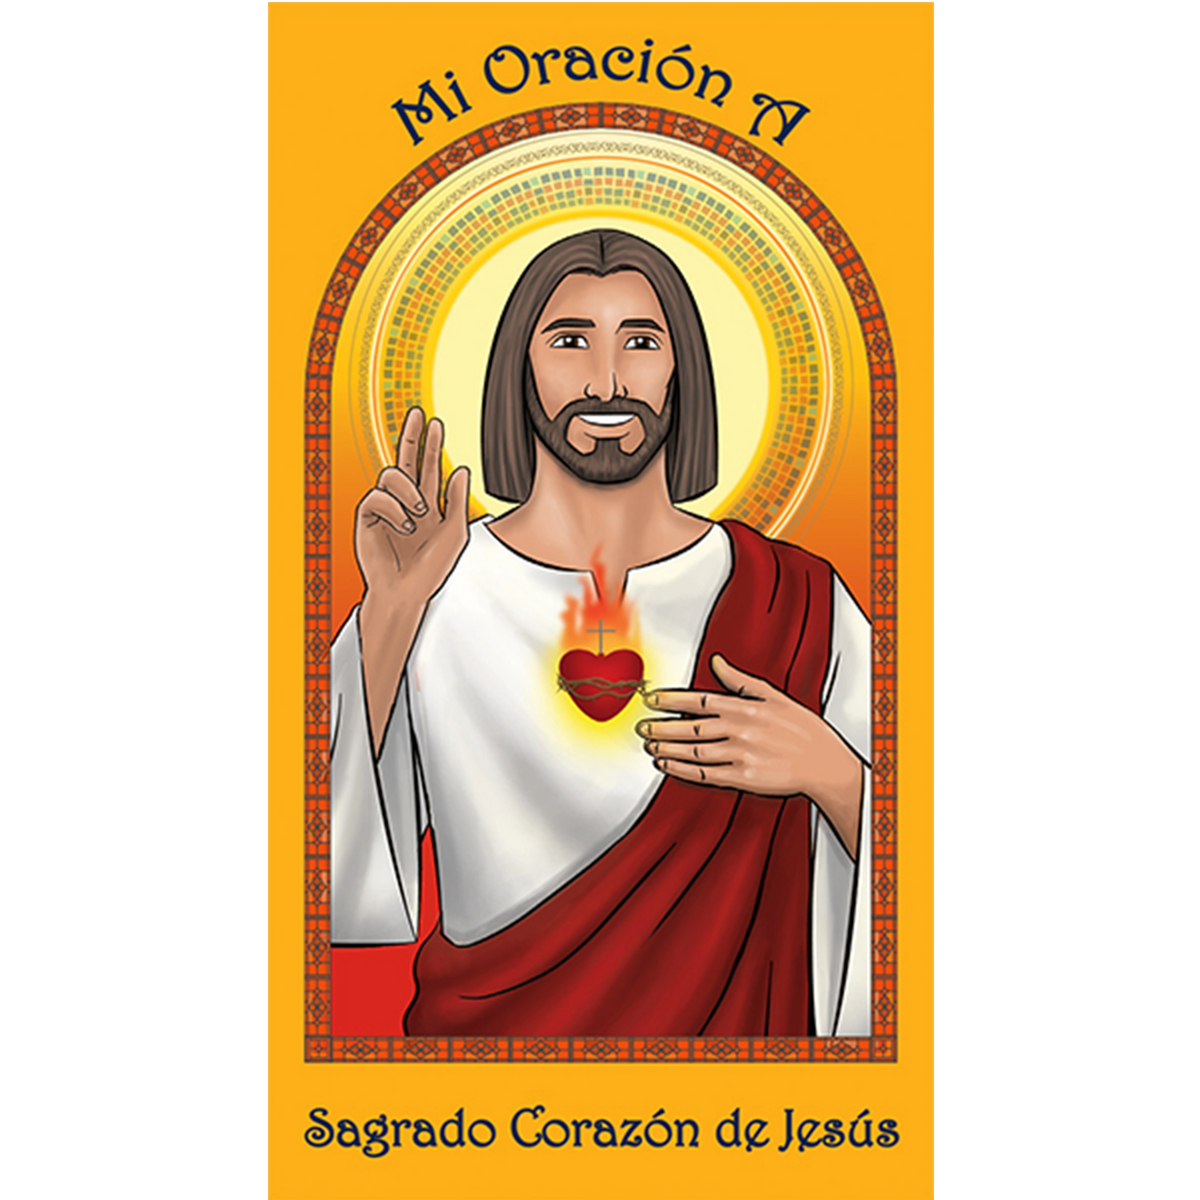 Sagrado Corazon de Jesus, Sacred Heart of Jesus Spanish